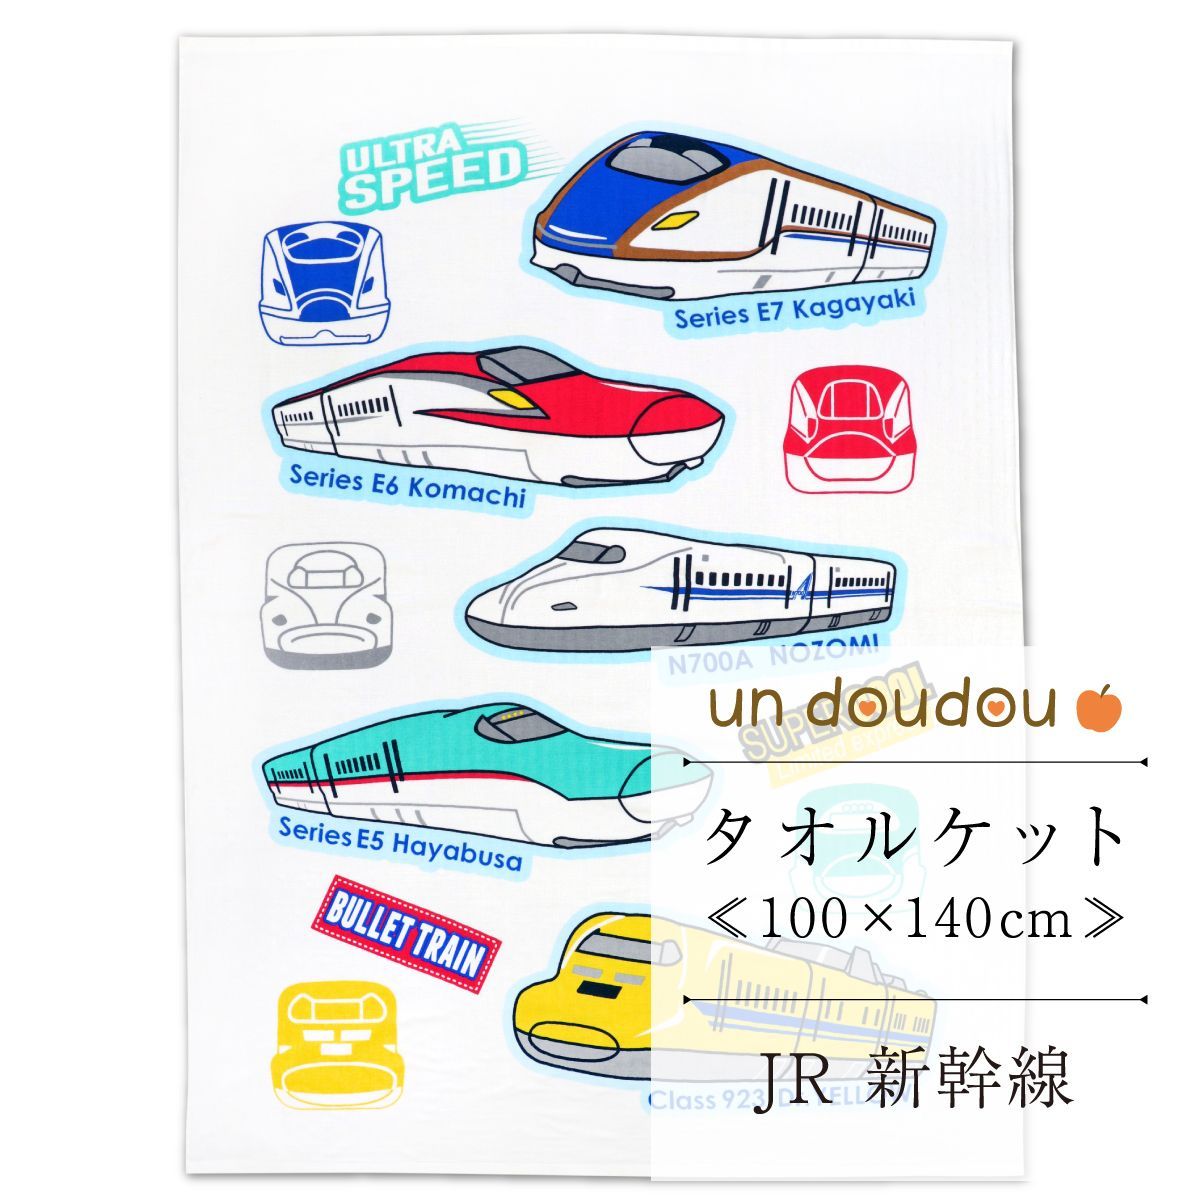 タオルケット JR 新幹線 100×140cm 新品 JR8700-0